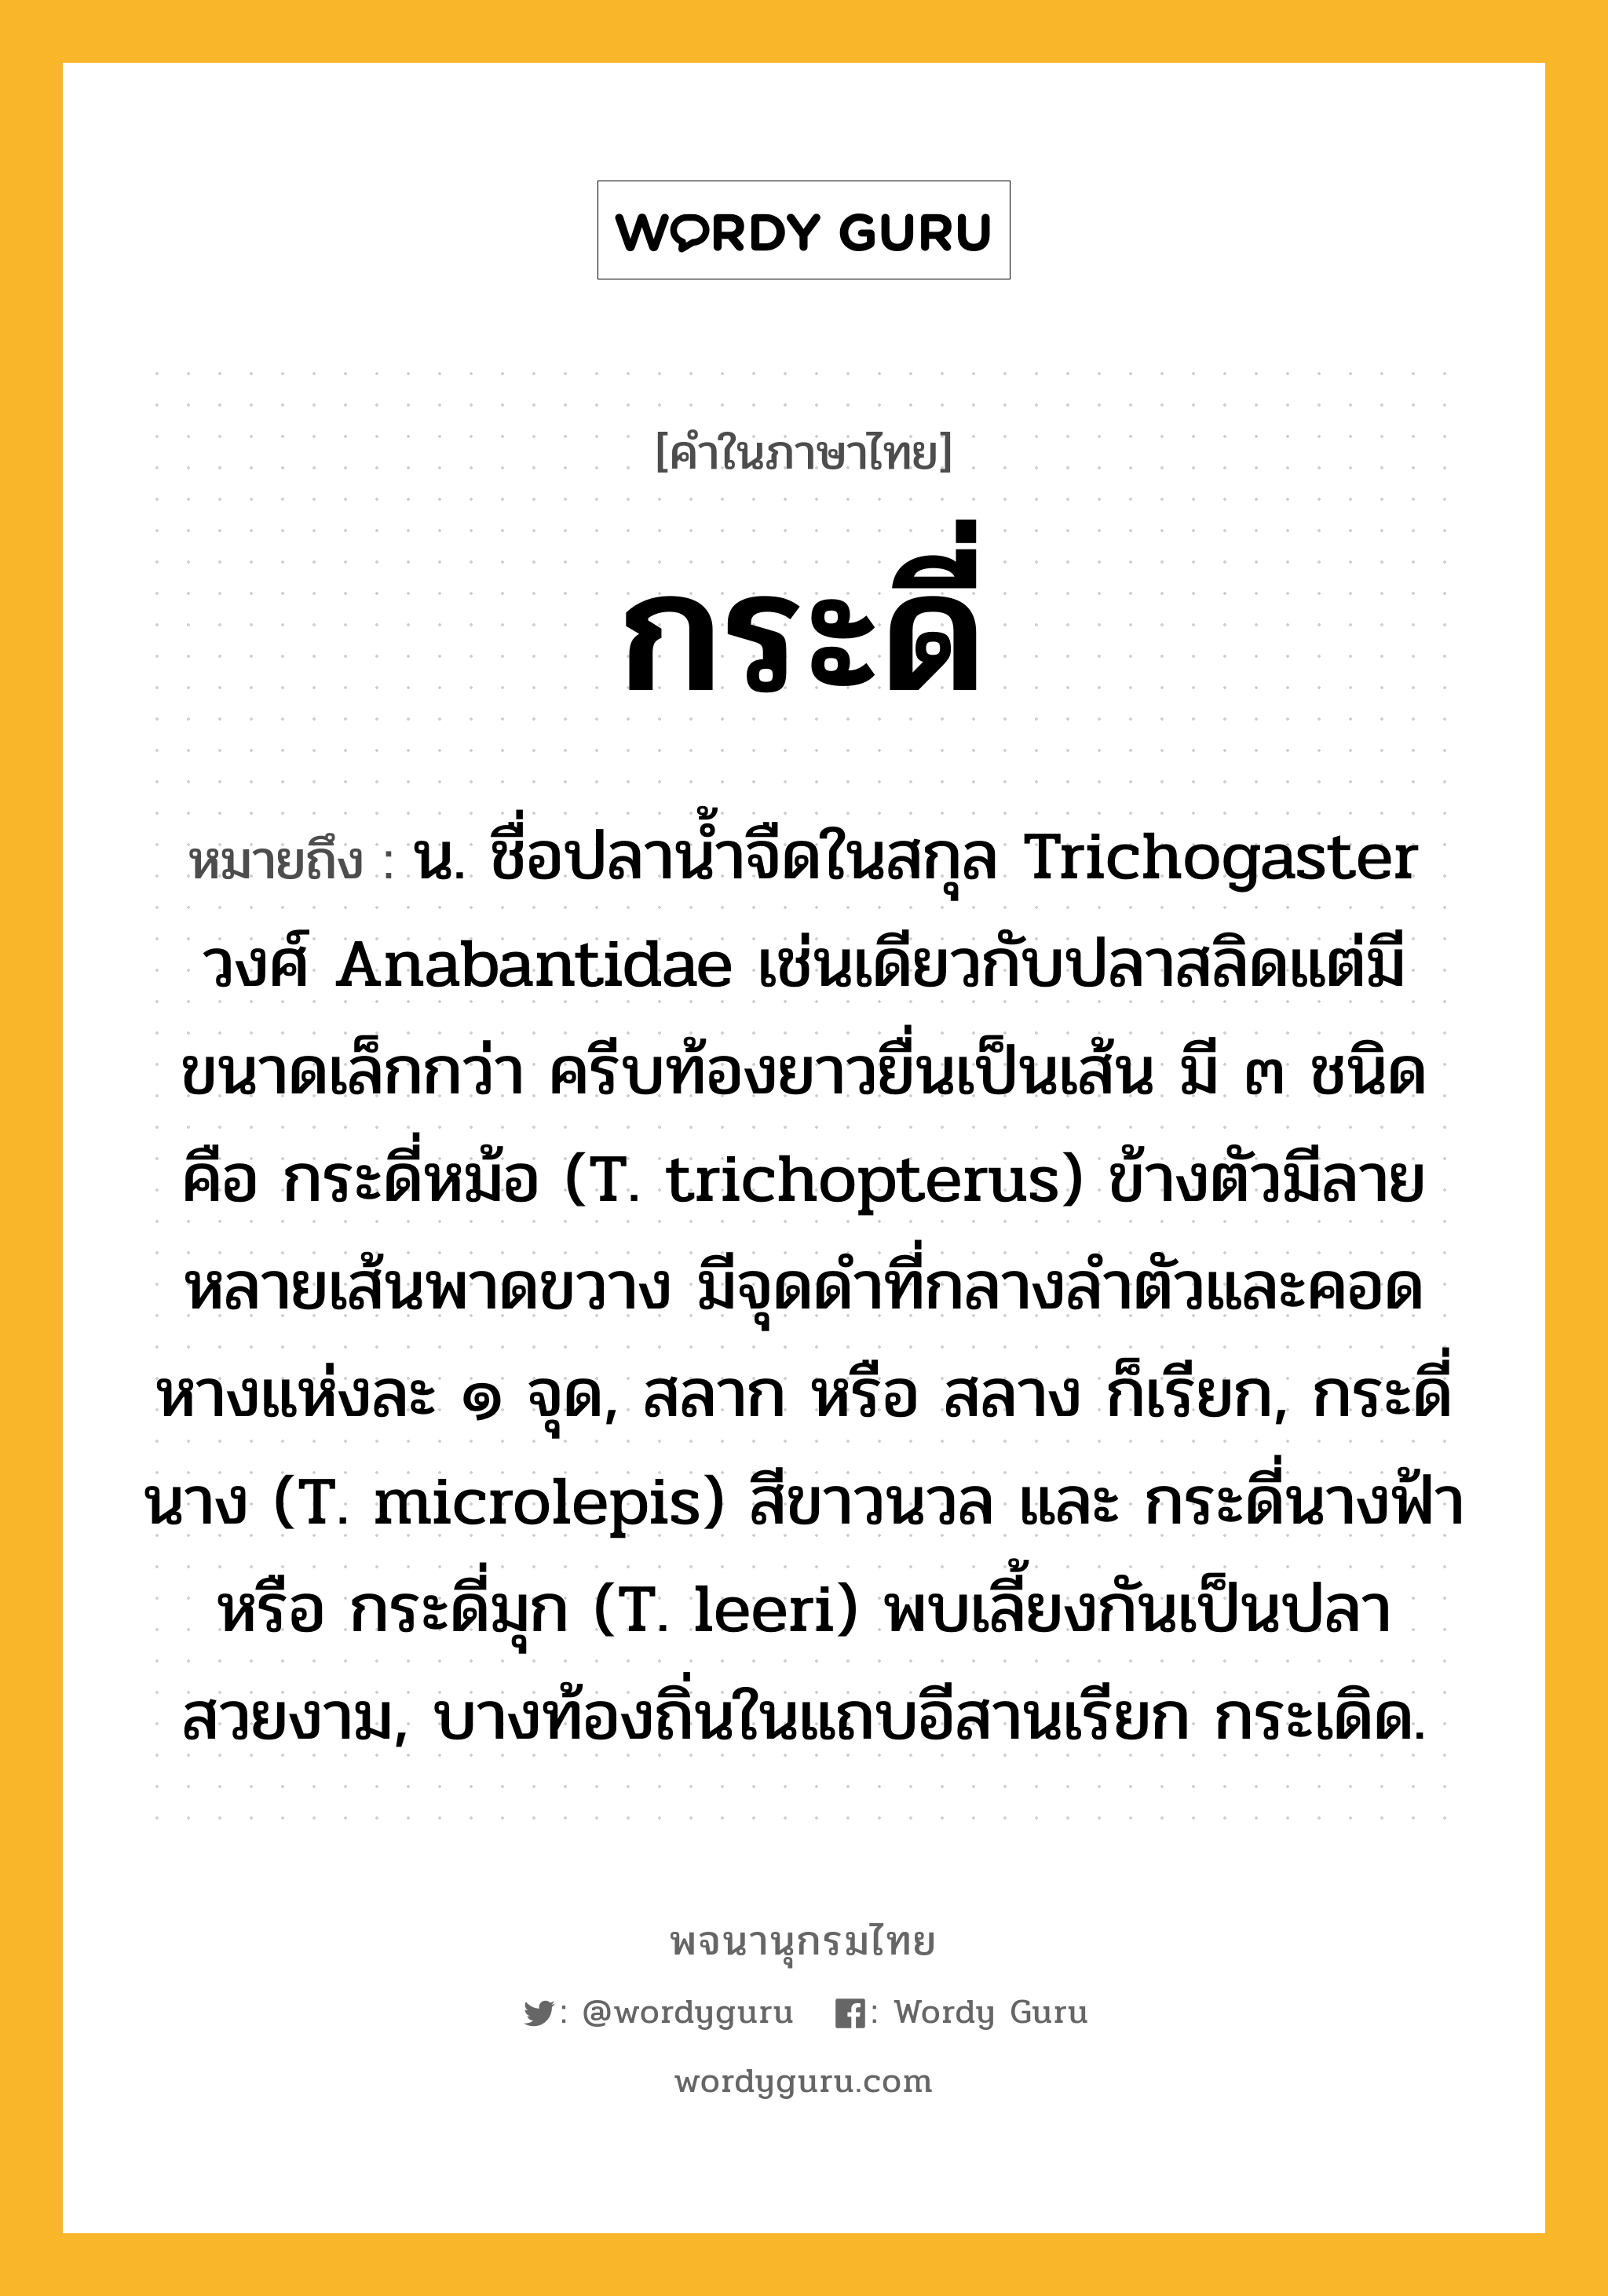 กระดี่ หมายถึงอะไร?, คำในภาษาไทย กระดี่ หมายถึง น. ชื่อปลานํ้าจืดในสกุล Trichogaster วงศ์ Anabantidae เช่นเดียวกับปลาสลิดแต่มีขนาดเล็กกว่า ครีบท้องยาวยื่นเป็นเส้น มี ๓ ชนิด คือ กระดี่หม้อ (T. trichopterus) ข้างตัวมีลายหลายเส้นพาดขวาง มีจุดดําที่กลางลําตัวและคอดหางแห่งละ ๑ จุด, สลาก หรือ สลาง ก็เรียก, กระดี่นาง (T. microlepis) สีขาวนวล และ กระดี่นางฟ้า หรือ กระดี่มุก (T. leeri) พบเลี้ยงกันเป็นปลาสวยงาม, บางท้องถิ่นในแถบอีสานเรียก กระเดิด.